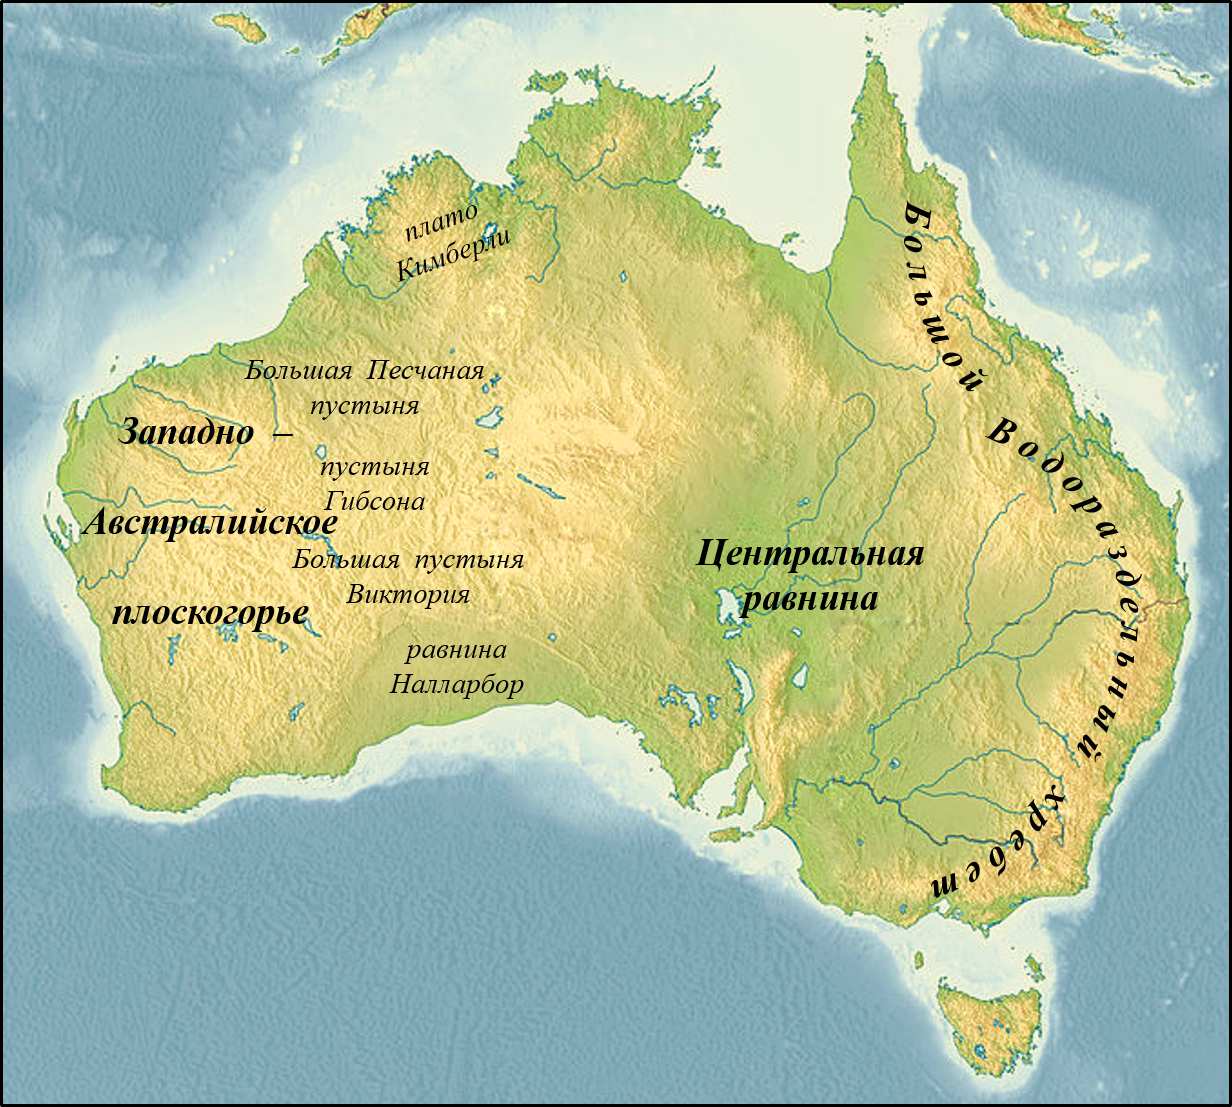 Находиться громадный. Большой Водораздельный хребет в Австралии на карте. Центральная низменность Австралии на карте Австралии. Название крупных форм рельефа Австралии. Западно австралийское плоскогорье на карте Австралии.